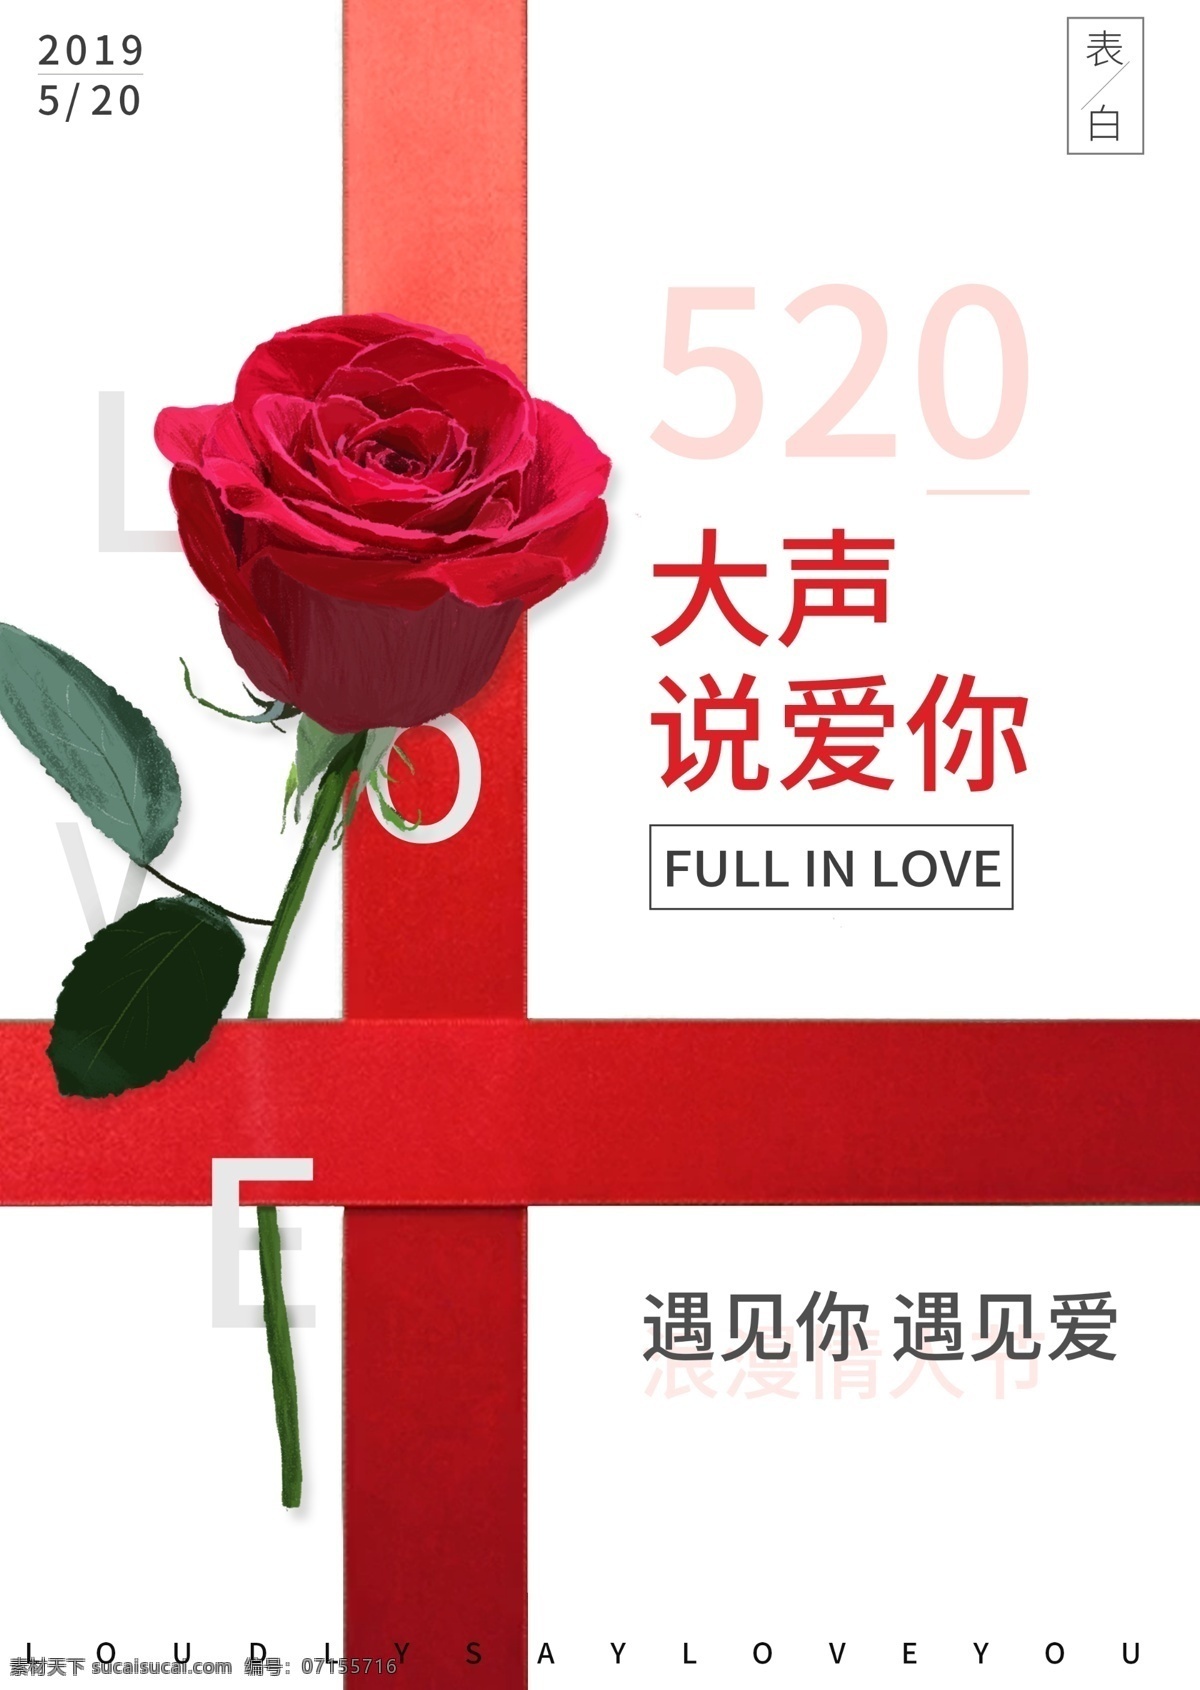 520 大胆 表白 节日 海报 浪漫 玫瑰 简约 时尚 情人节 love